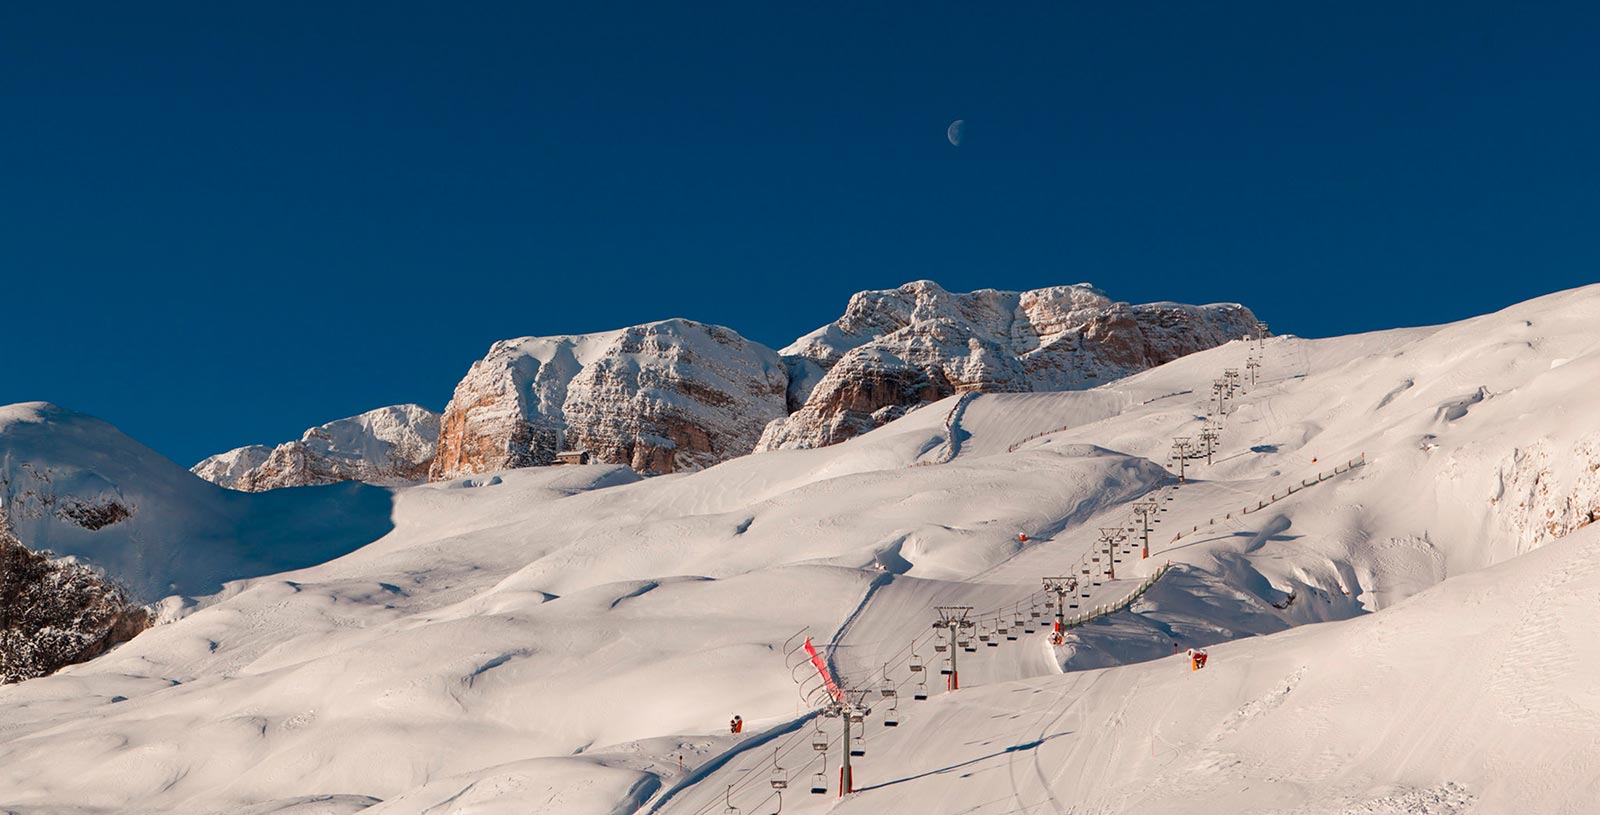 White ski slope in winter in Alta Badia